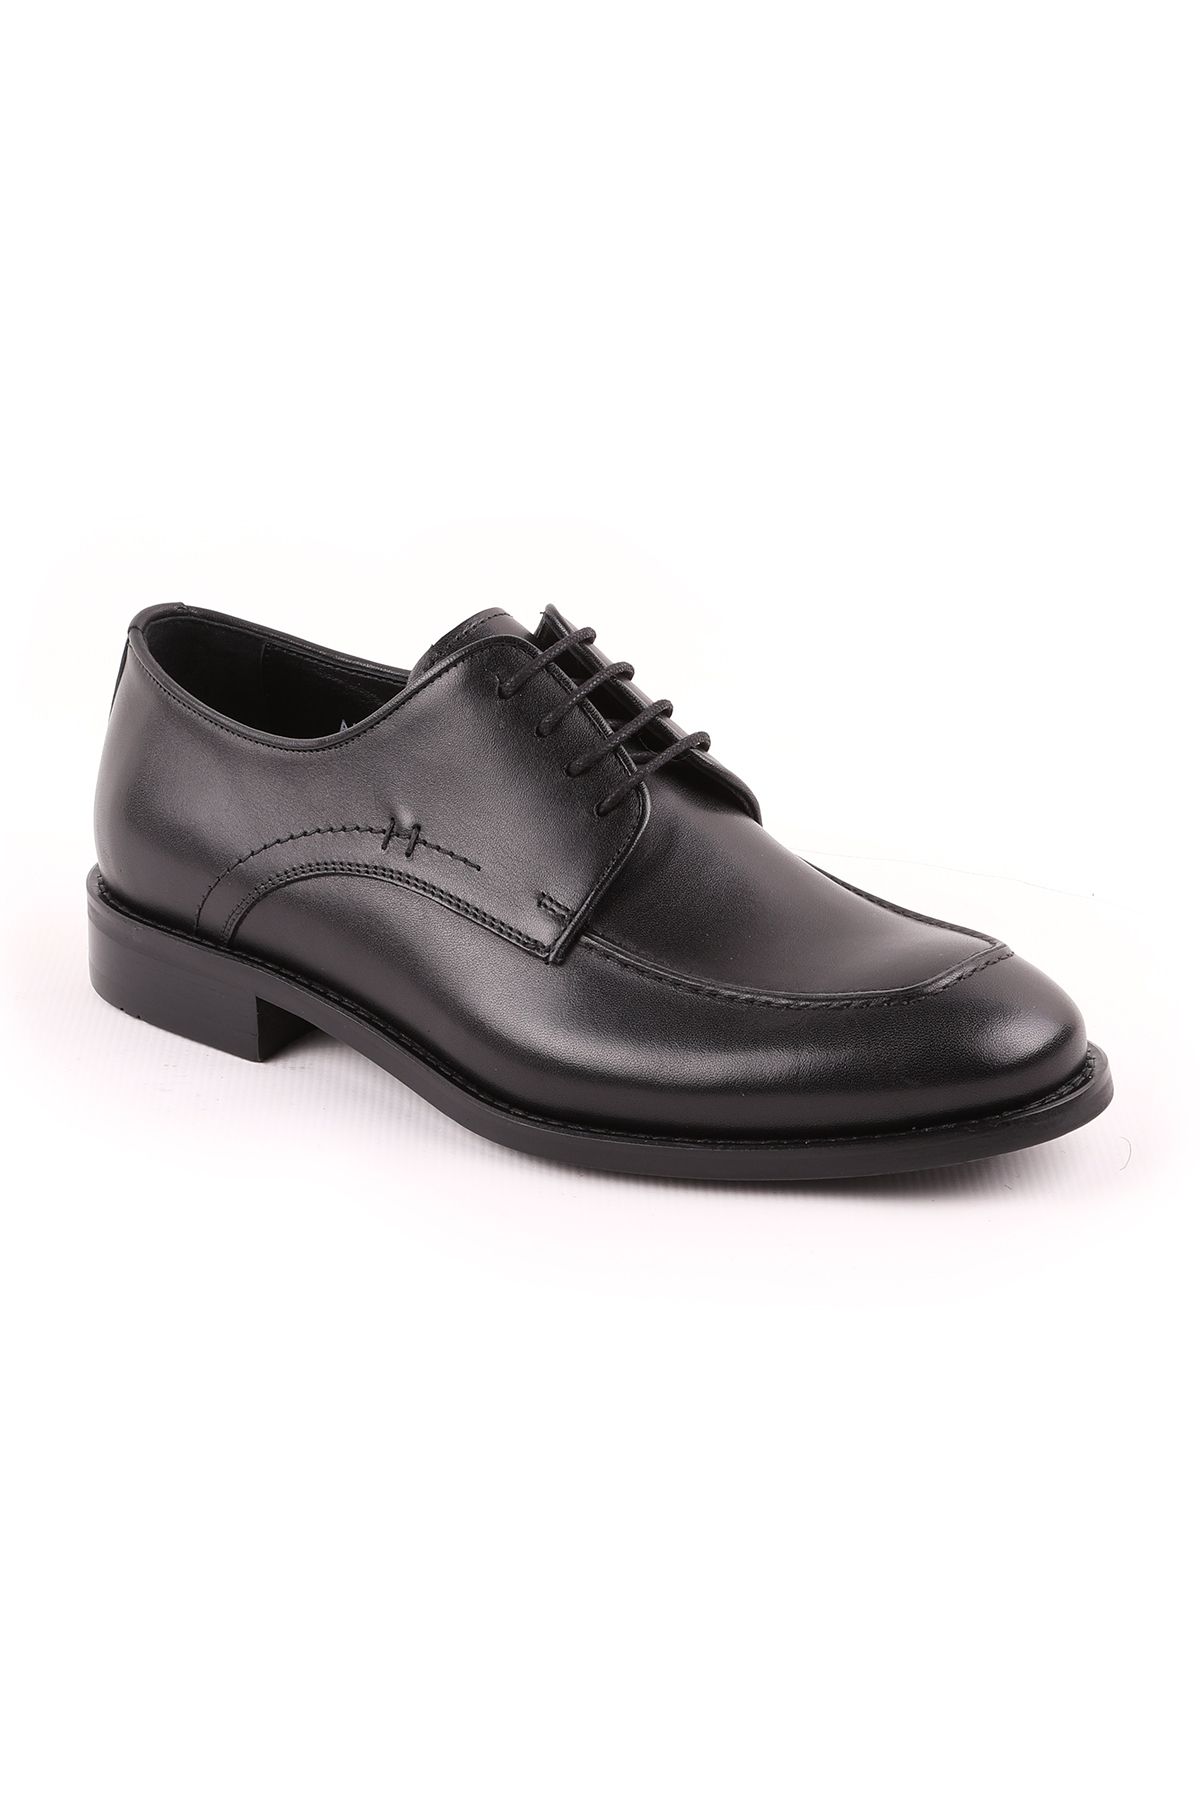 Libero L3563 Klasik Erkek Ayakkabı Siyah